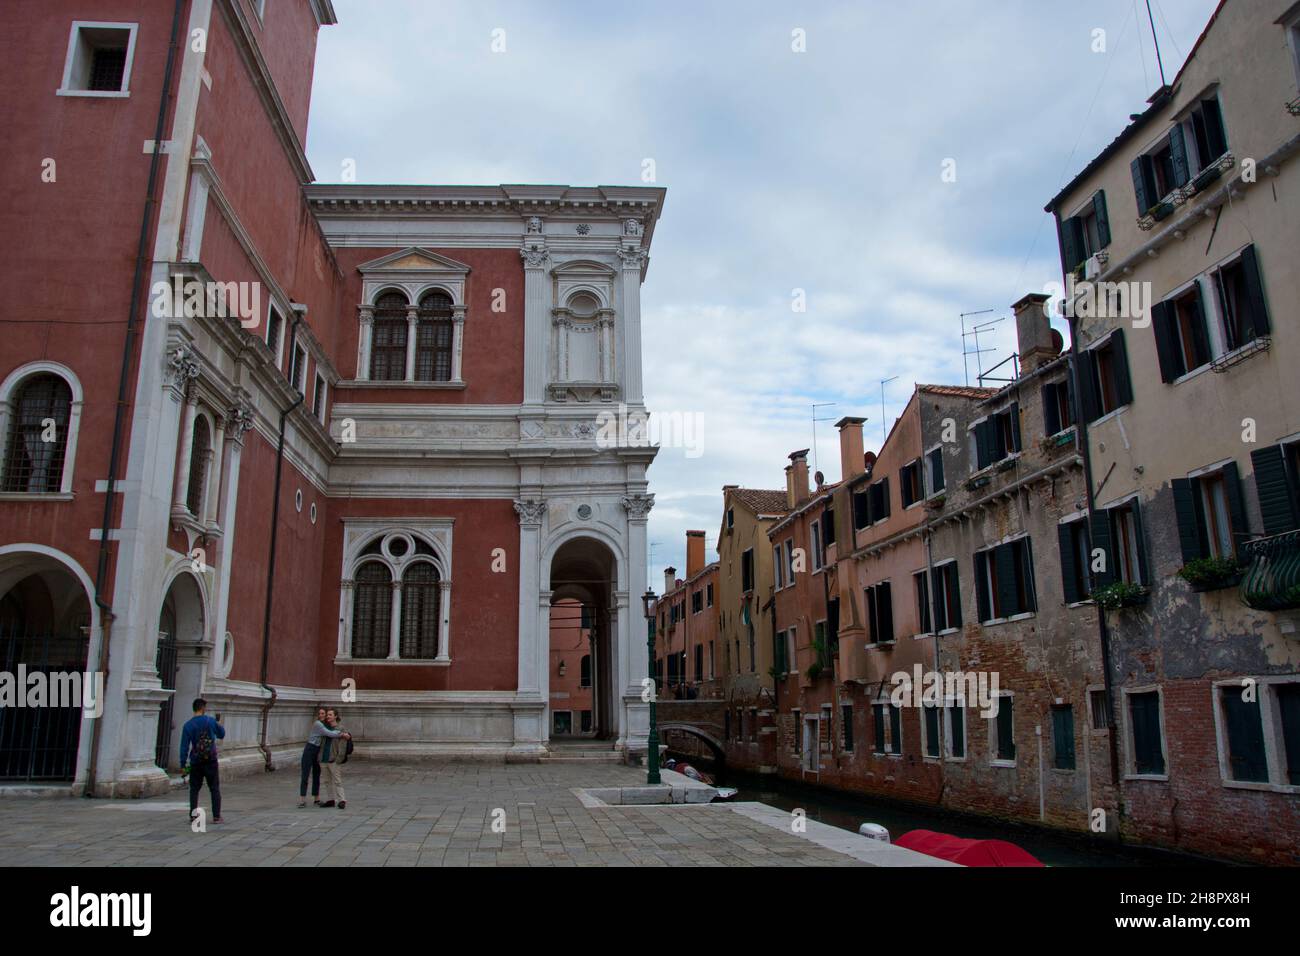 Ein Paar posiert vor einem Palast in Venedig Foto Stock